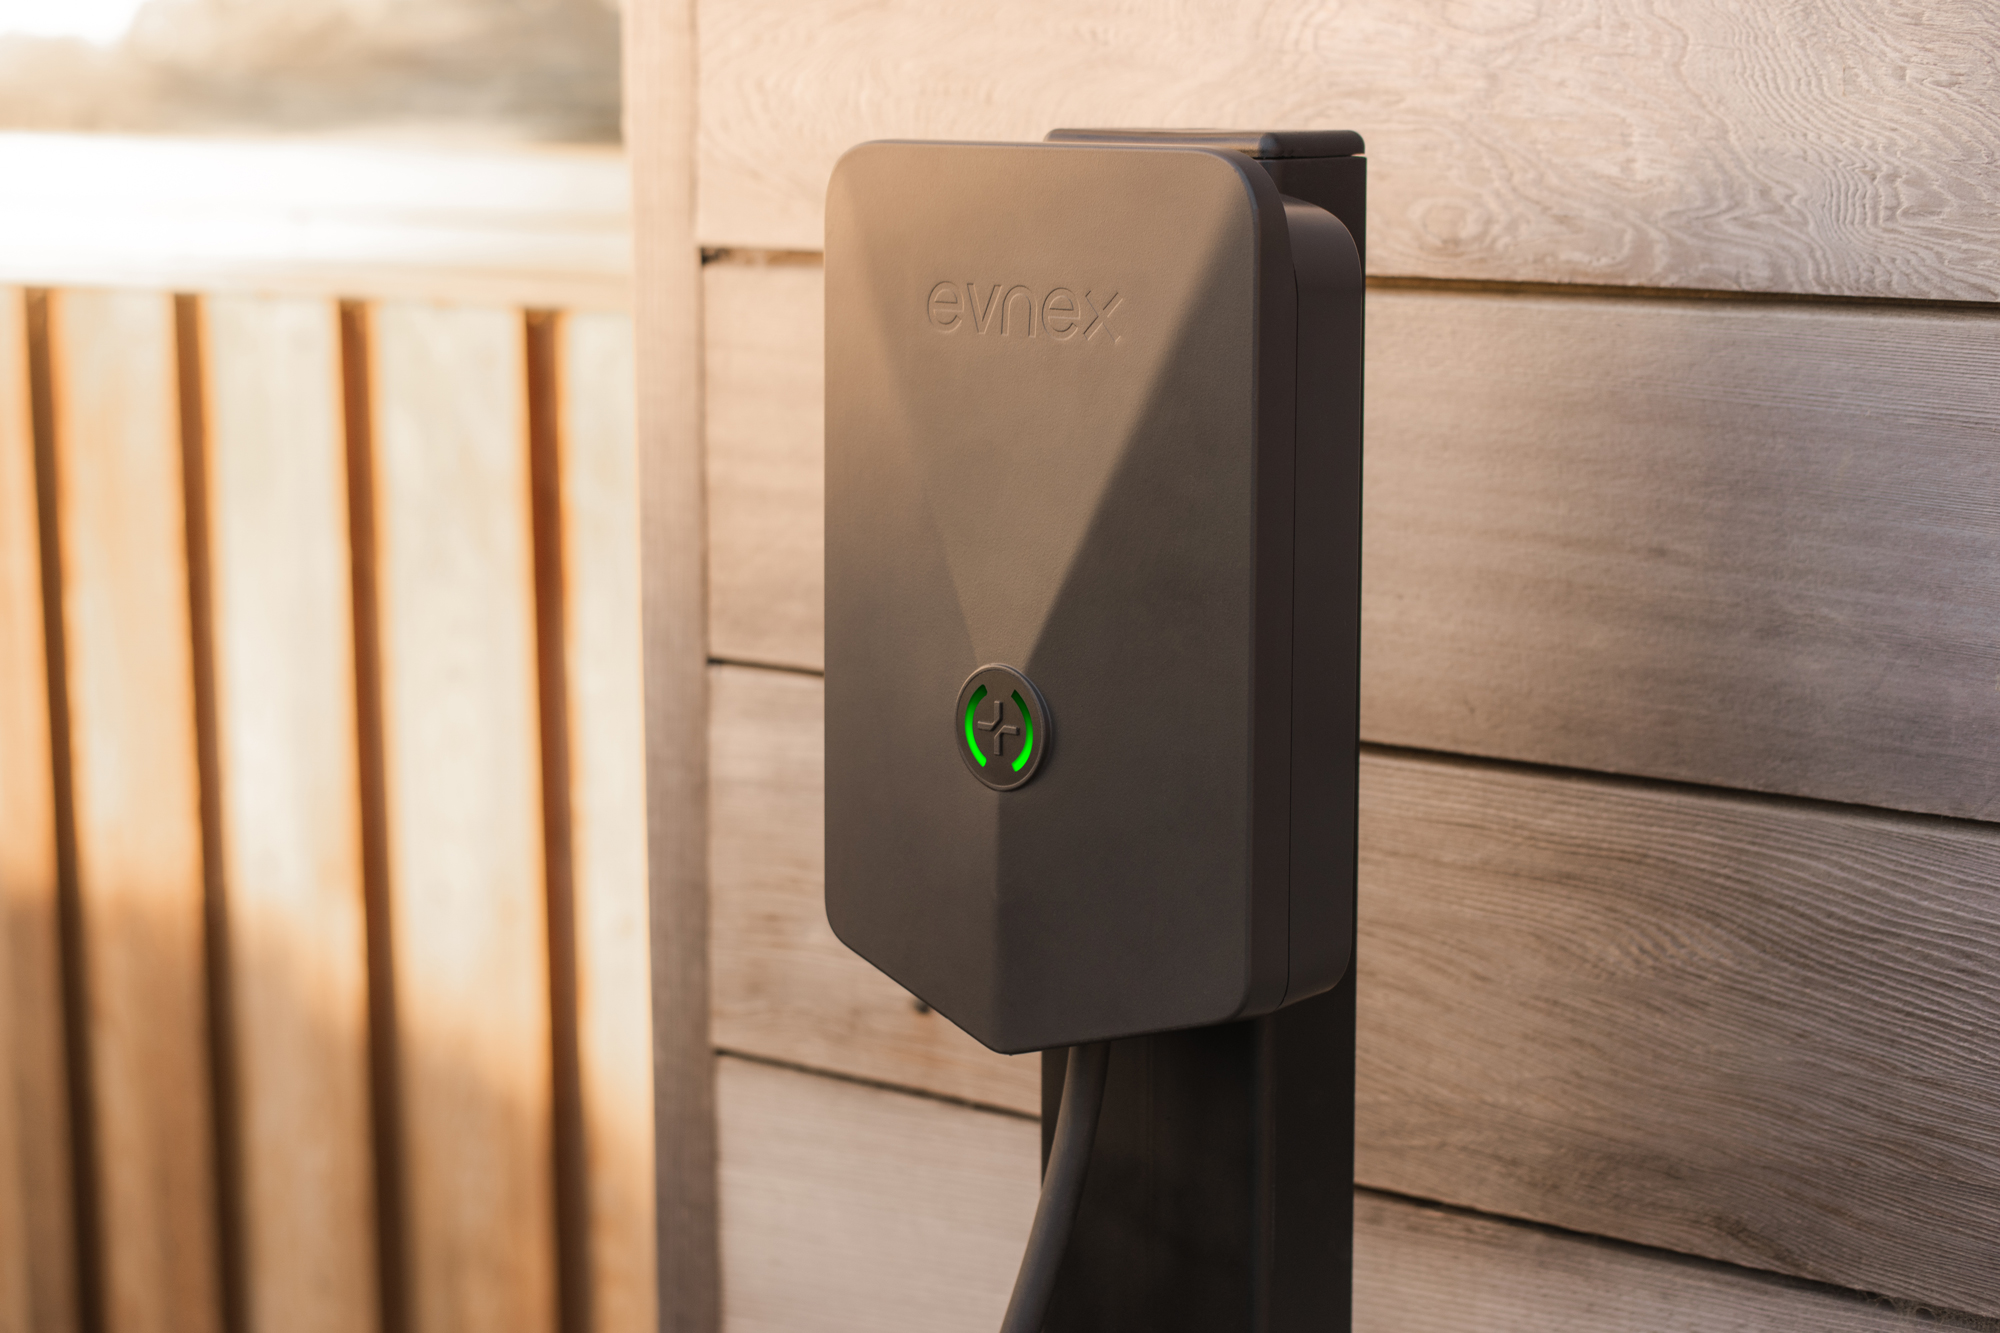 Evnex E2 smart EV charger